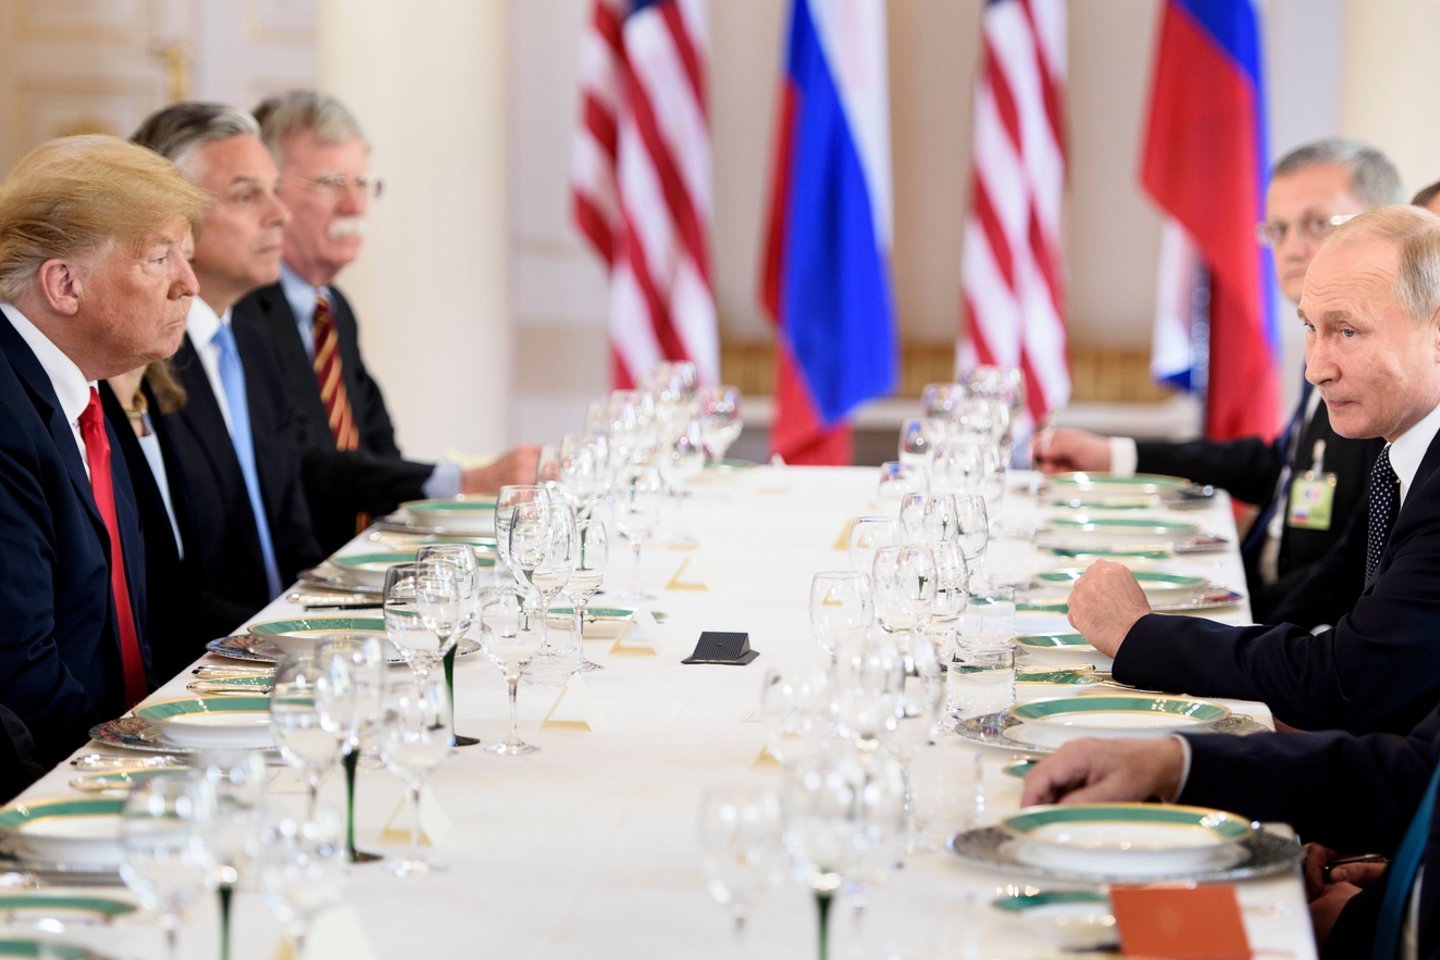 Praėjusį mėnesį įvyko JAV ir Rusijos viršūnių susitikimas. Jame Vladimiras Putinas Donaldui Trumpui pateikė ilgą sąrašą prašymų ir pasiūlymų ginklų kontrolės tema. <br>AFP/Scanpix nuotr.